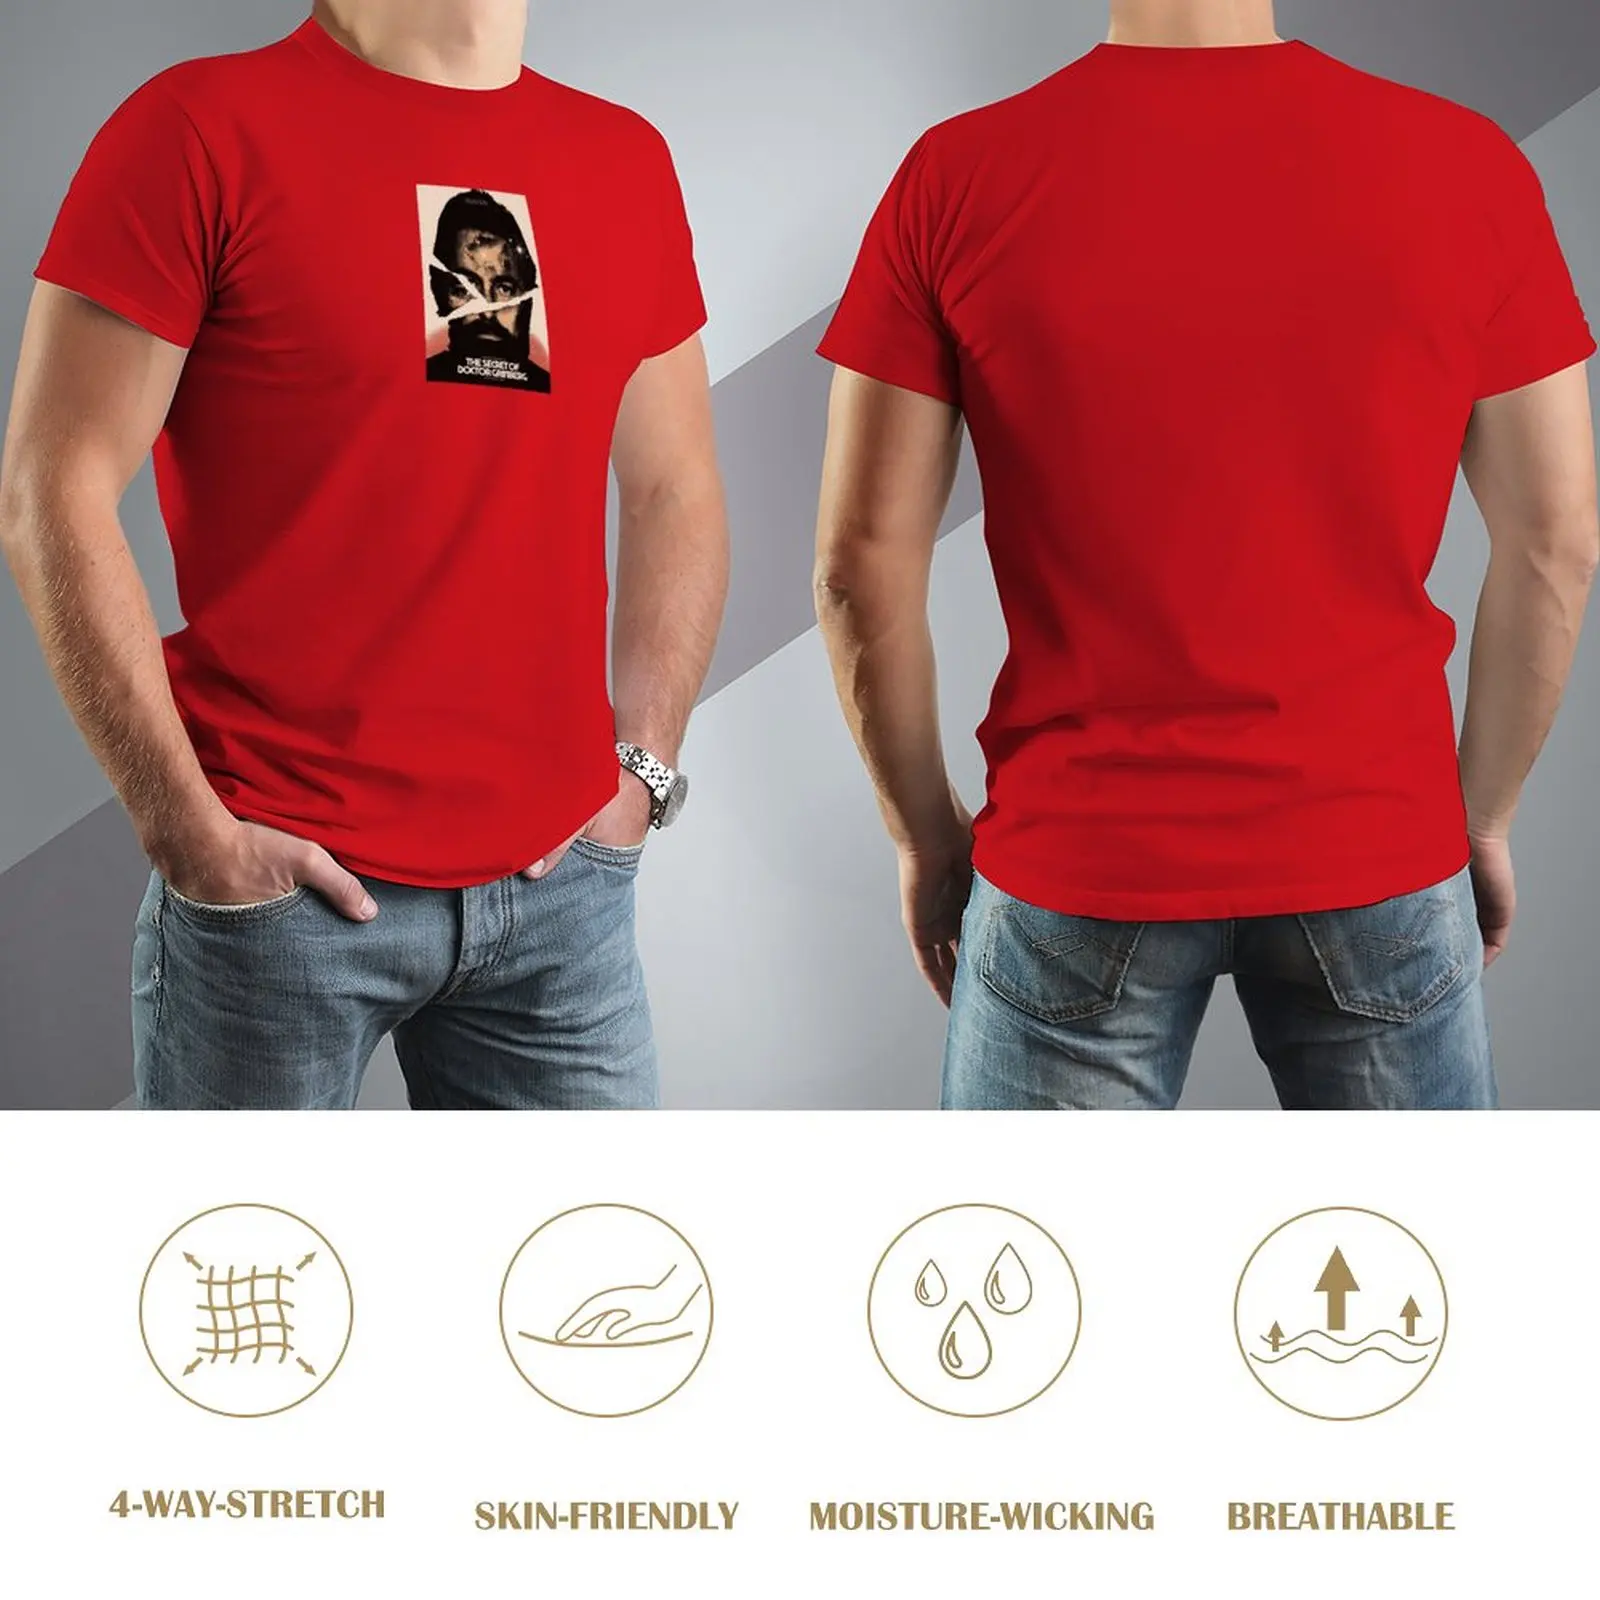 Футболка Джейкоба Гринберга, короткие черные футболки, мужские футболки Изображение 2